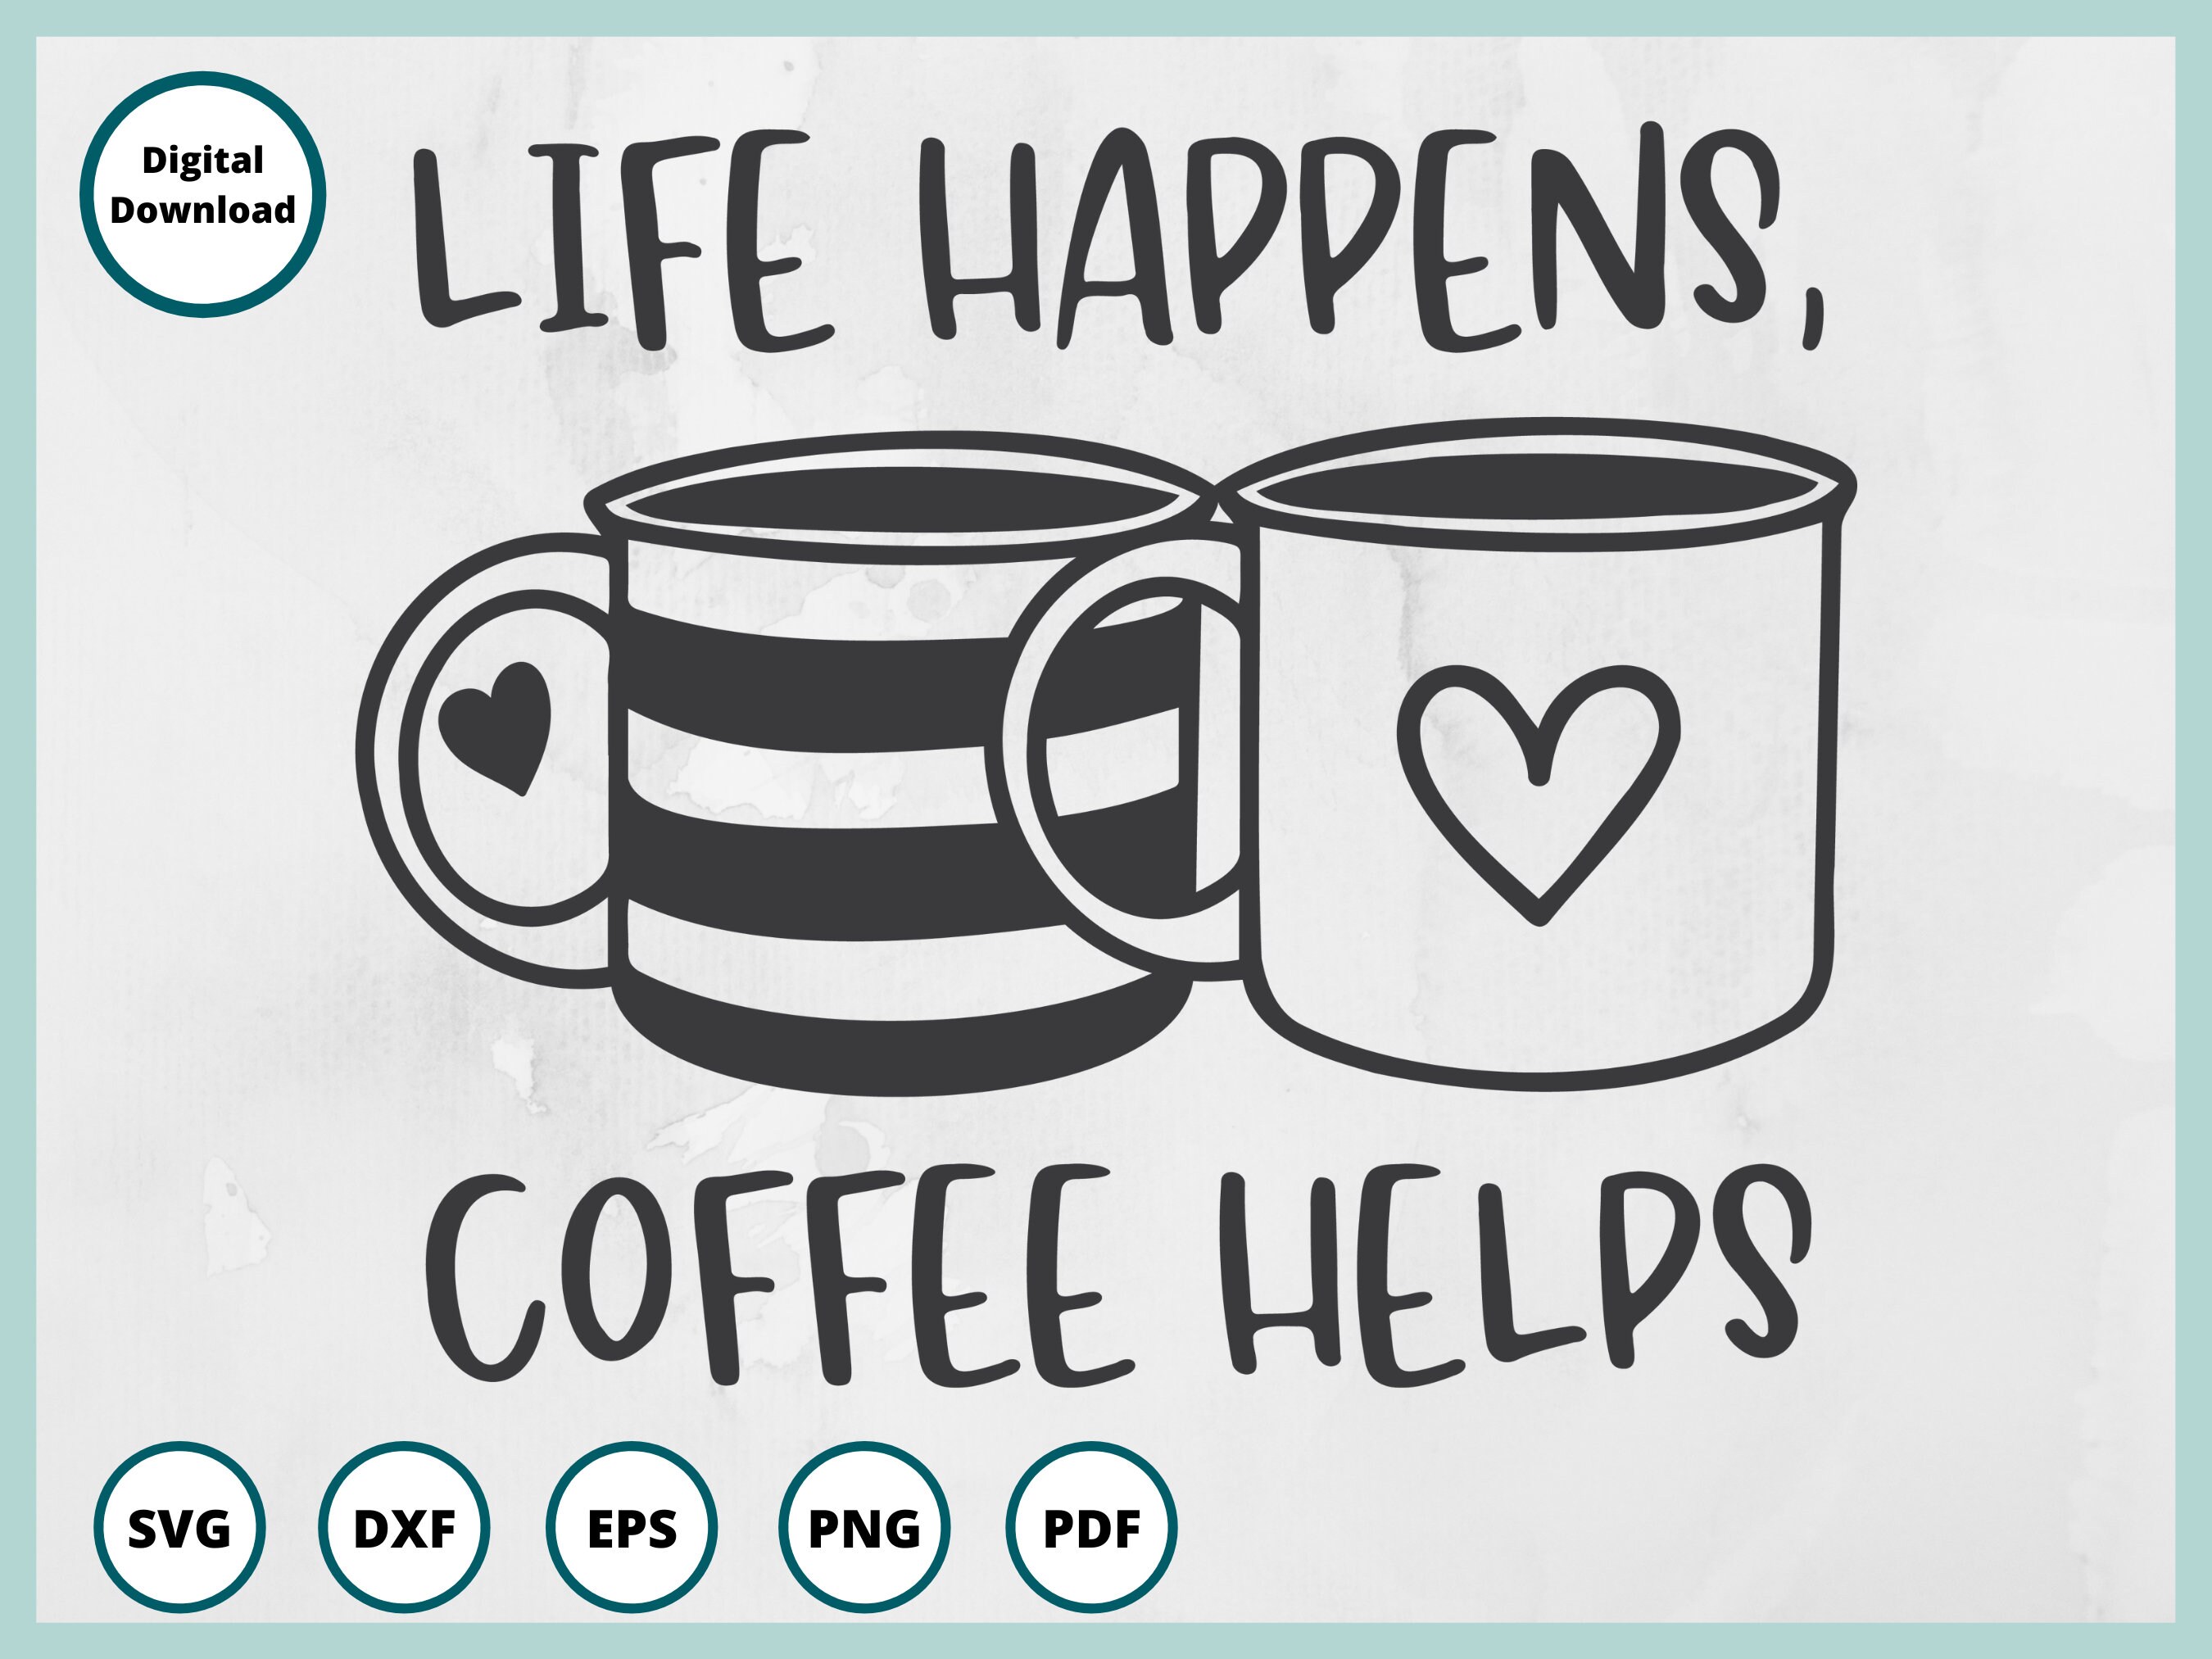 Life Coffee Etsy Happens -